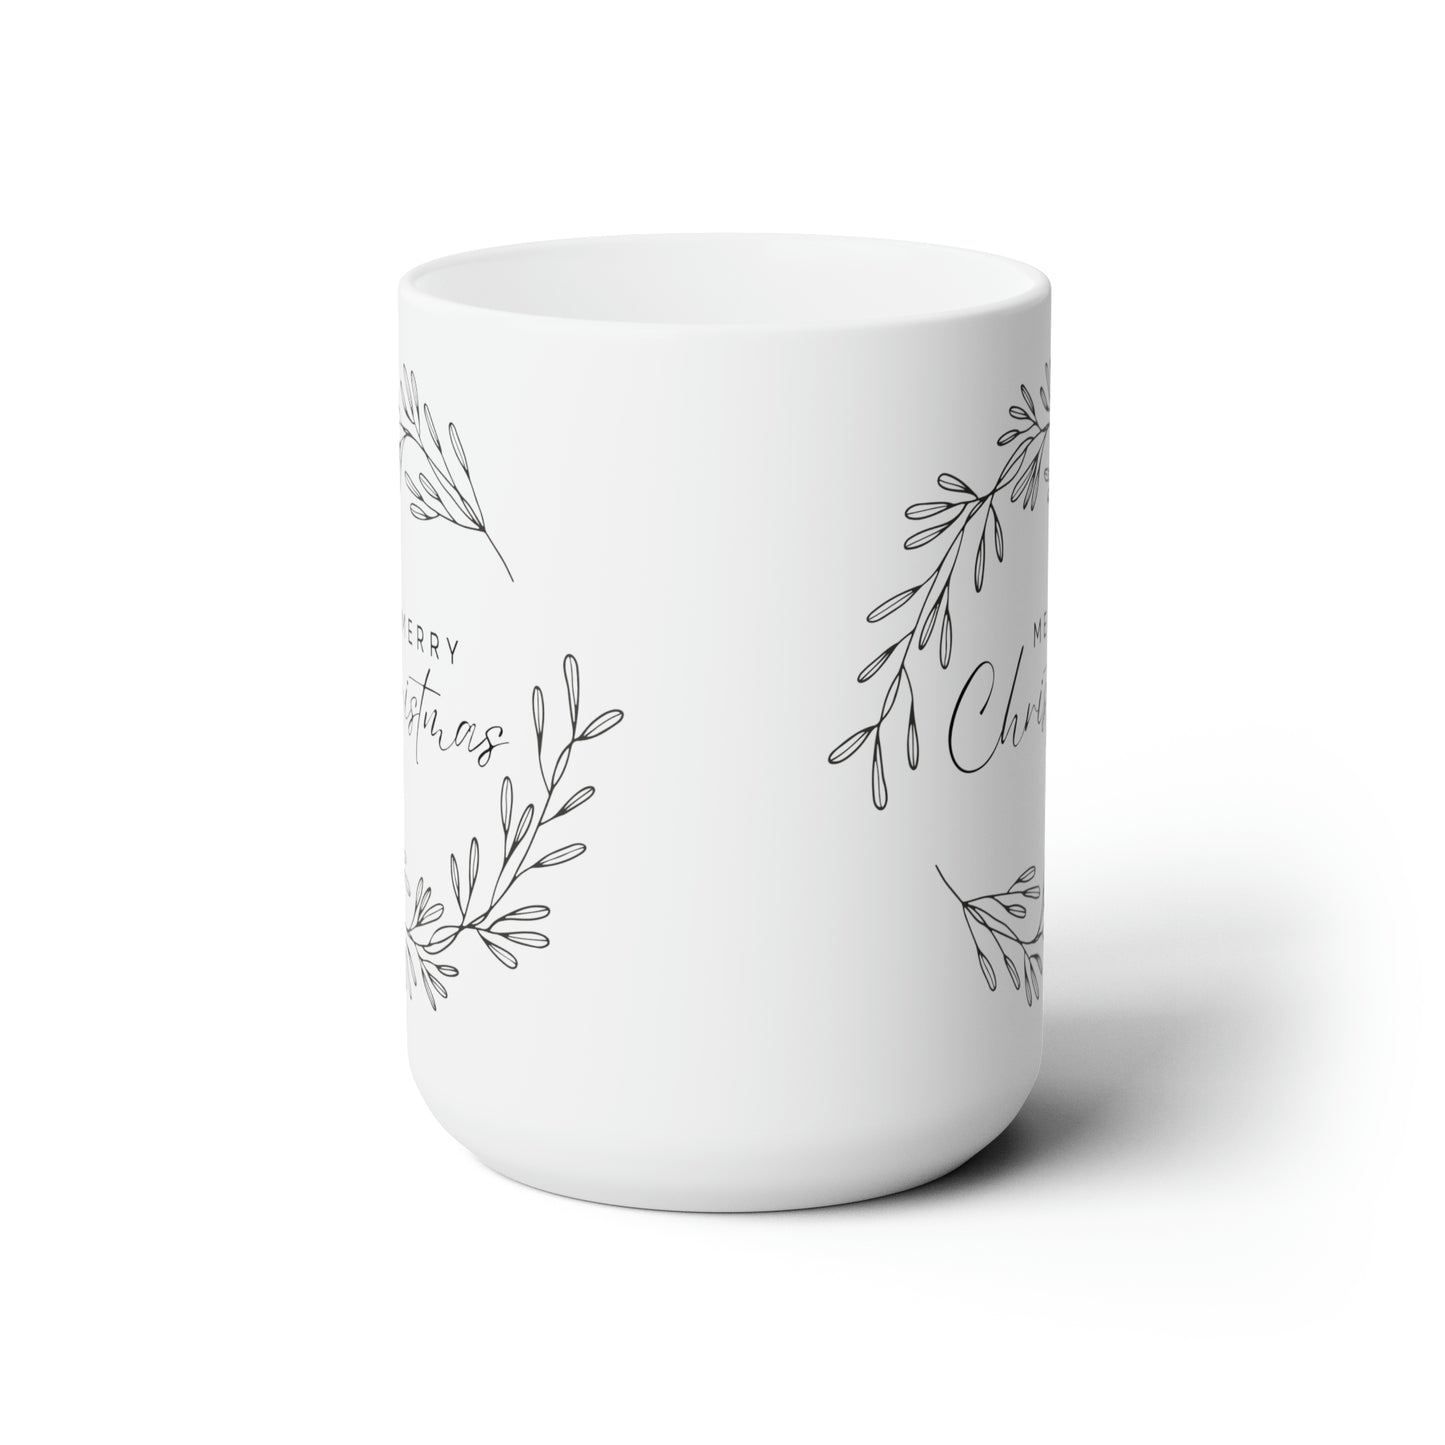 Merry Christmas Printed Mug, 15oz